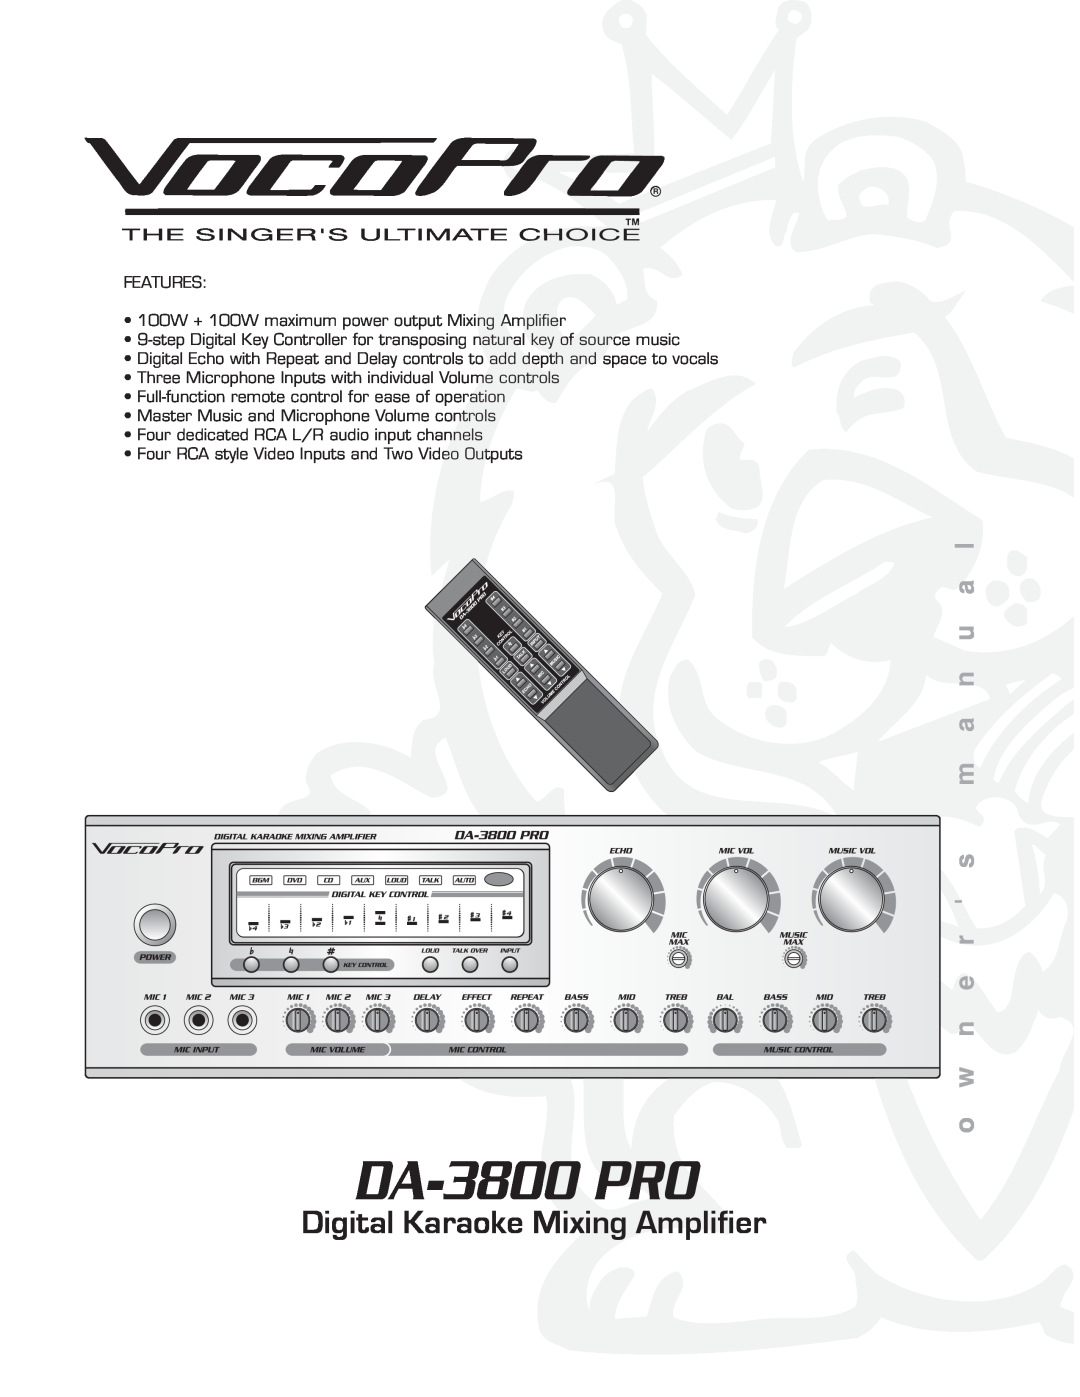 VocoPro DA-3800 PRO owner manual Digital Karaoke Mixing Amplifier 